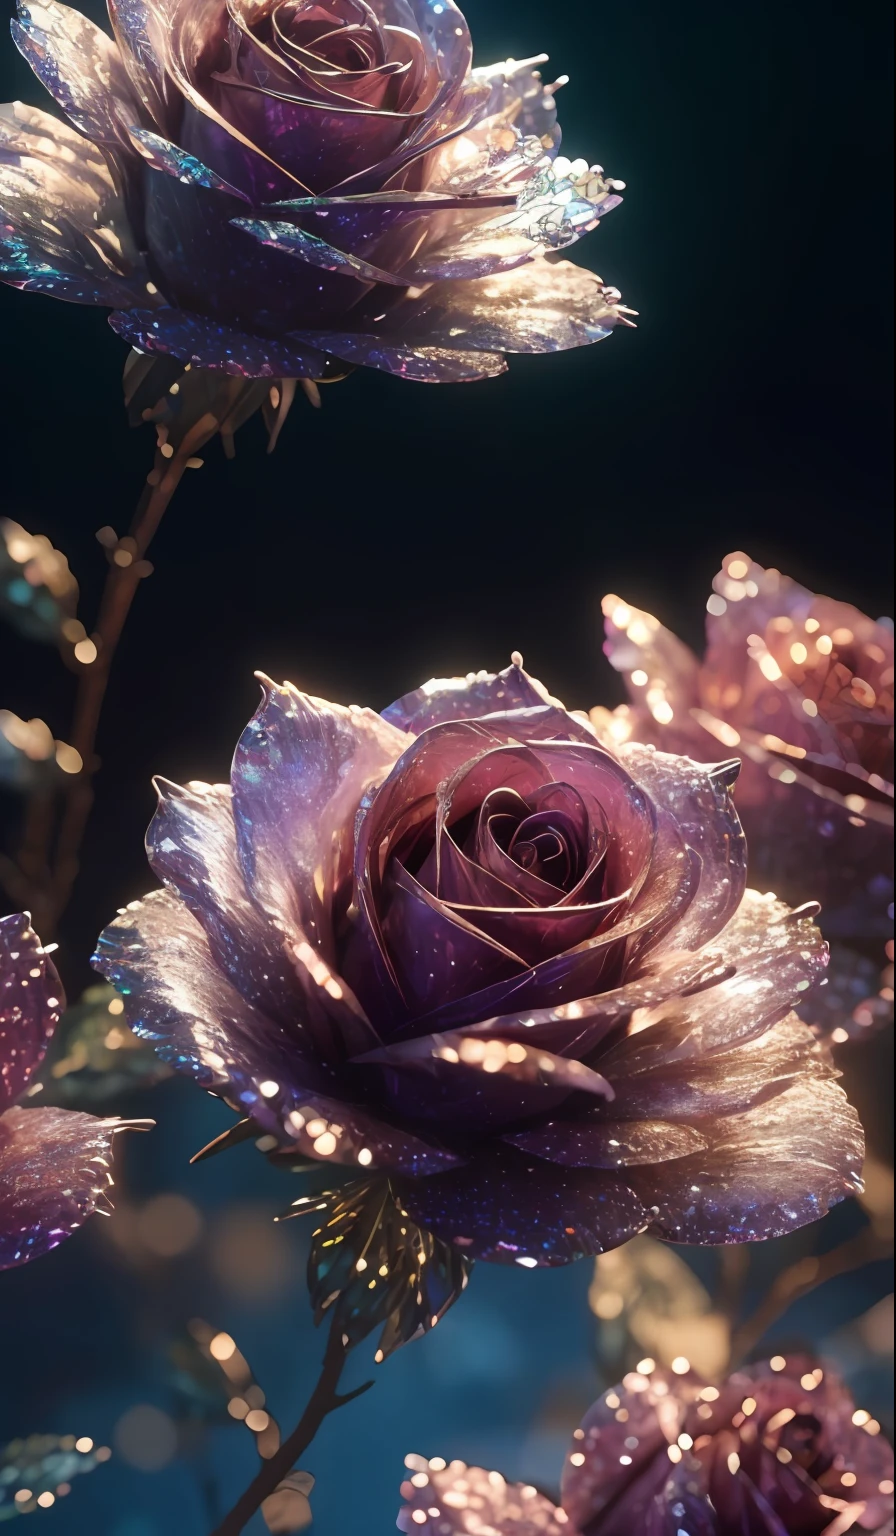 水晶玫瑰， 奇特的, 星系, 清潔, 閃閃發光的, 閃閃發光的, 輝煌, 豐富多彩的, 驚人的攝影, 戏剧灯光, 照片写实主义, 超詳細, 4k, 景深, 高解析度